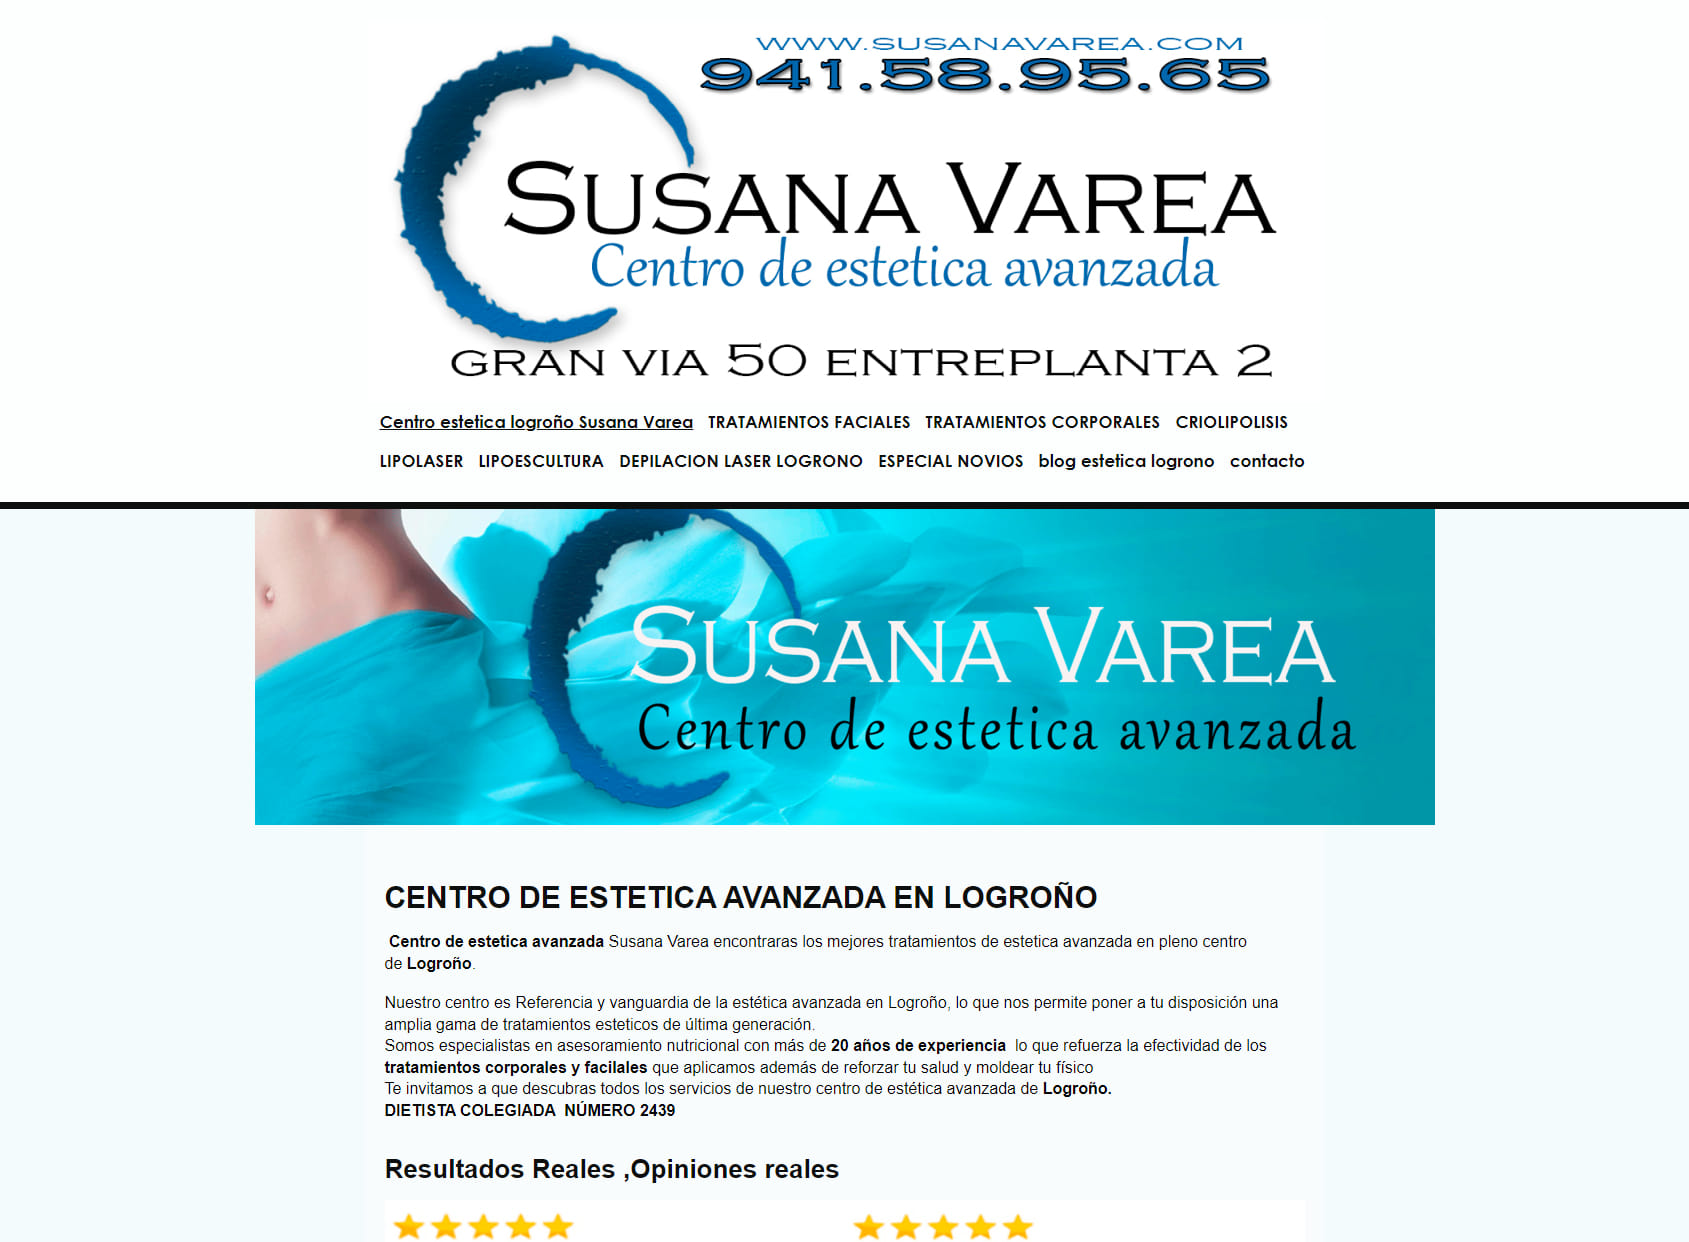 Centro de Estetica Avanzada en Logroño-Susana Varea